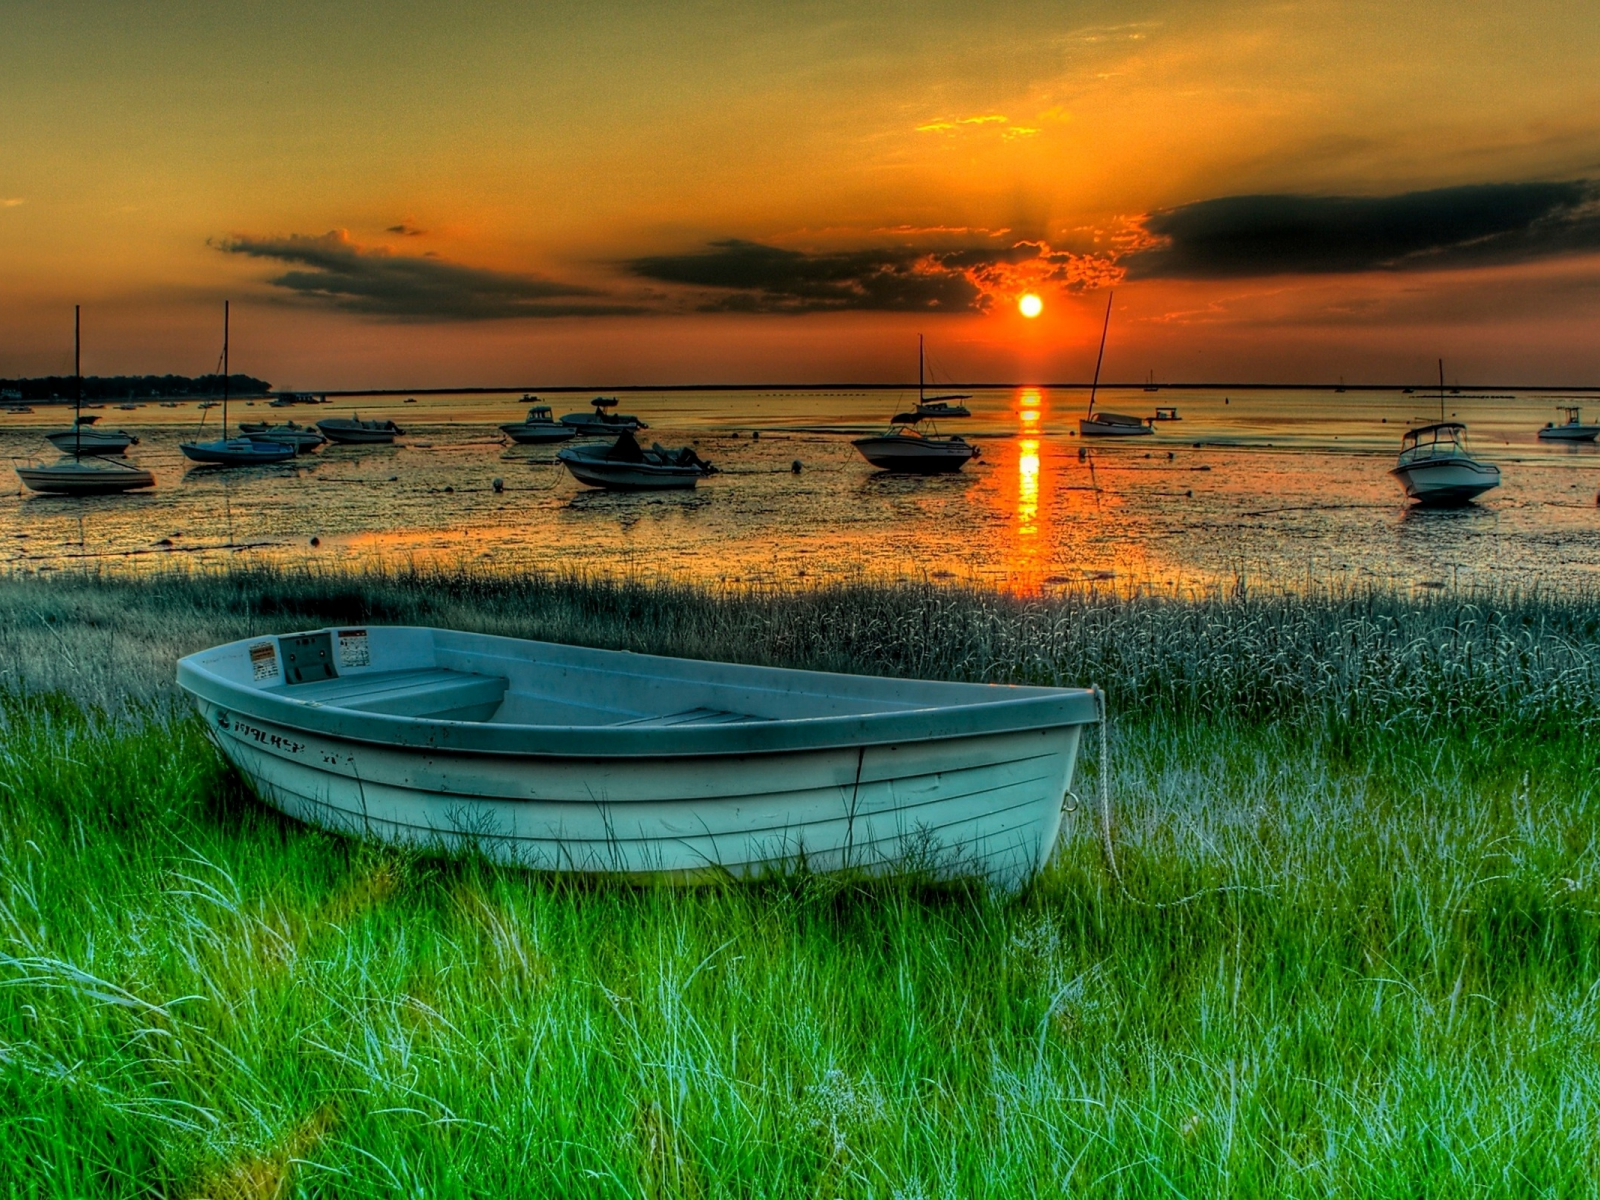 пейзаж, закат, beautiful, boats, природа, лодки, landscape, sunset, hdr, nature, красивые